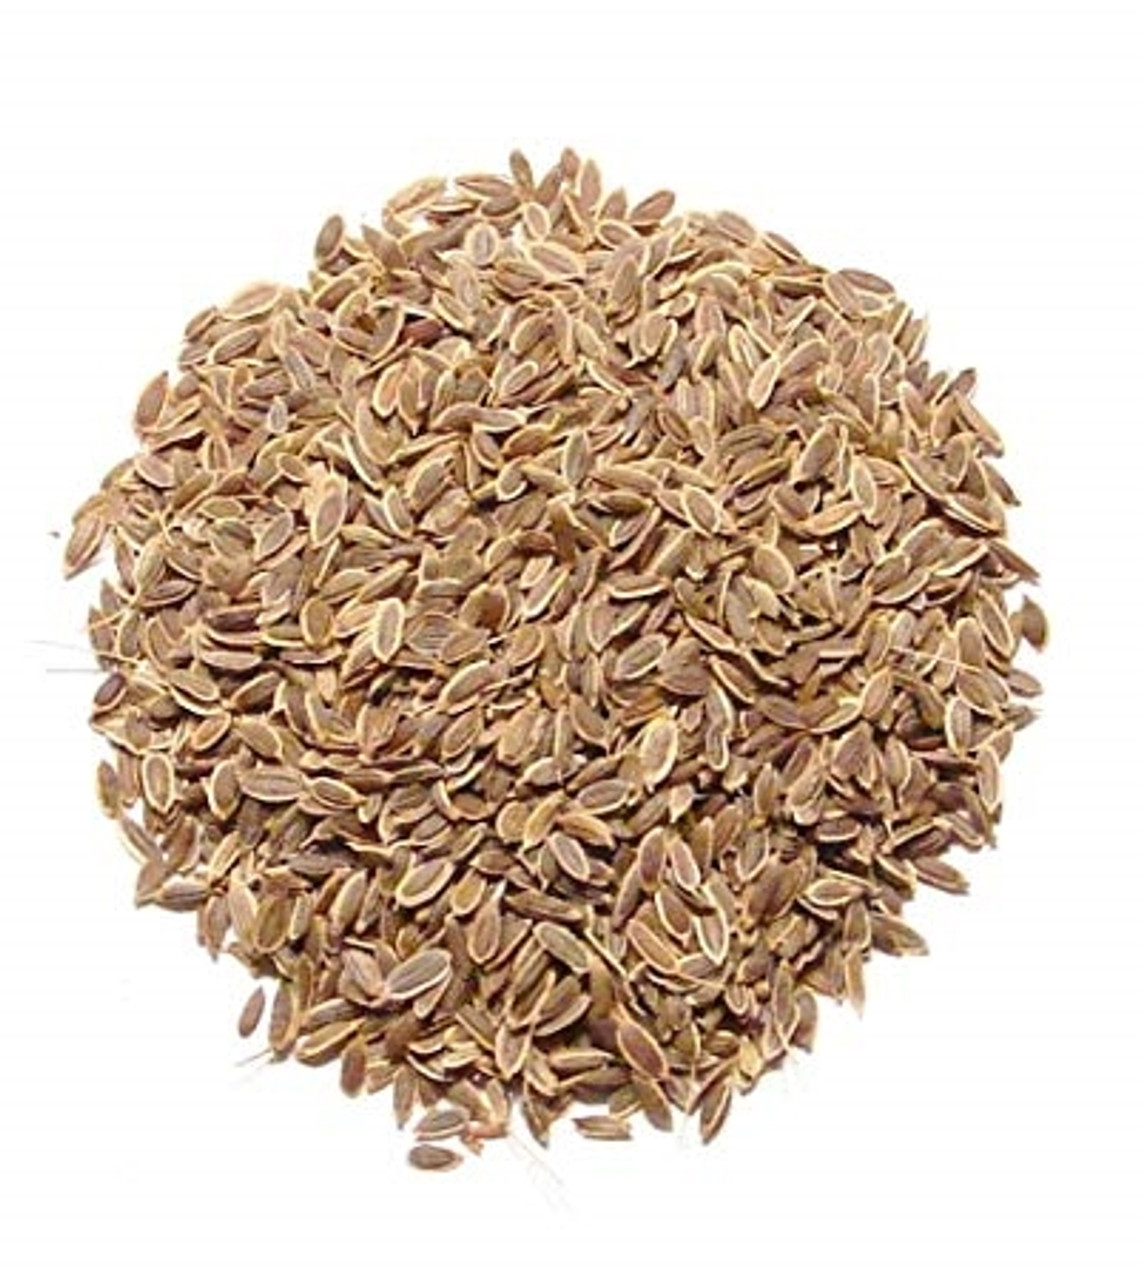 Dill Seed (3.5 ounces)